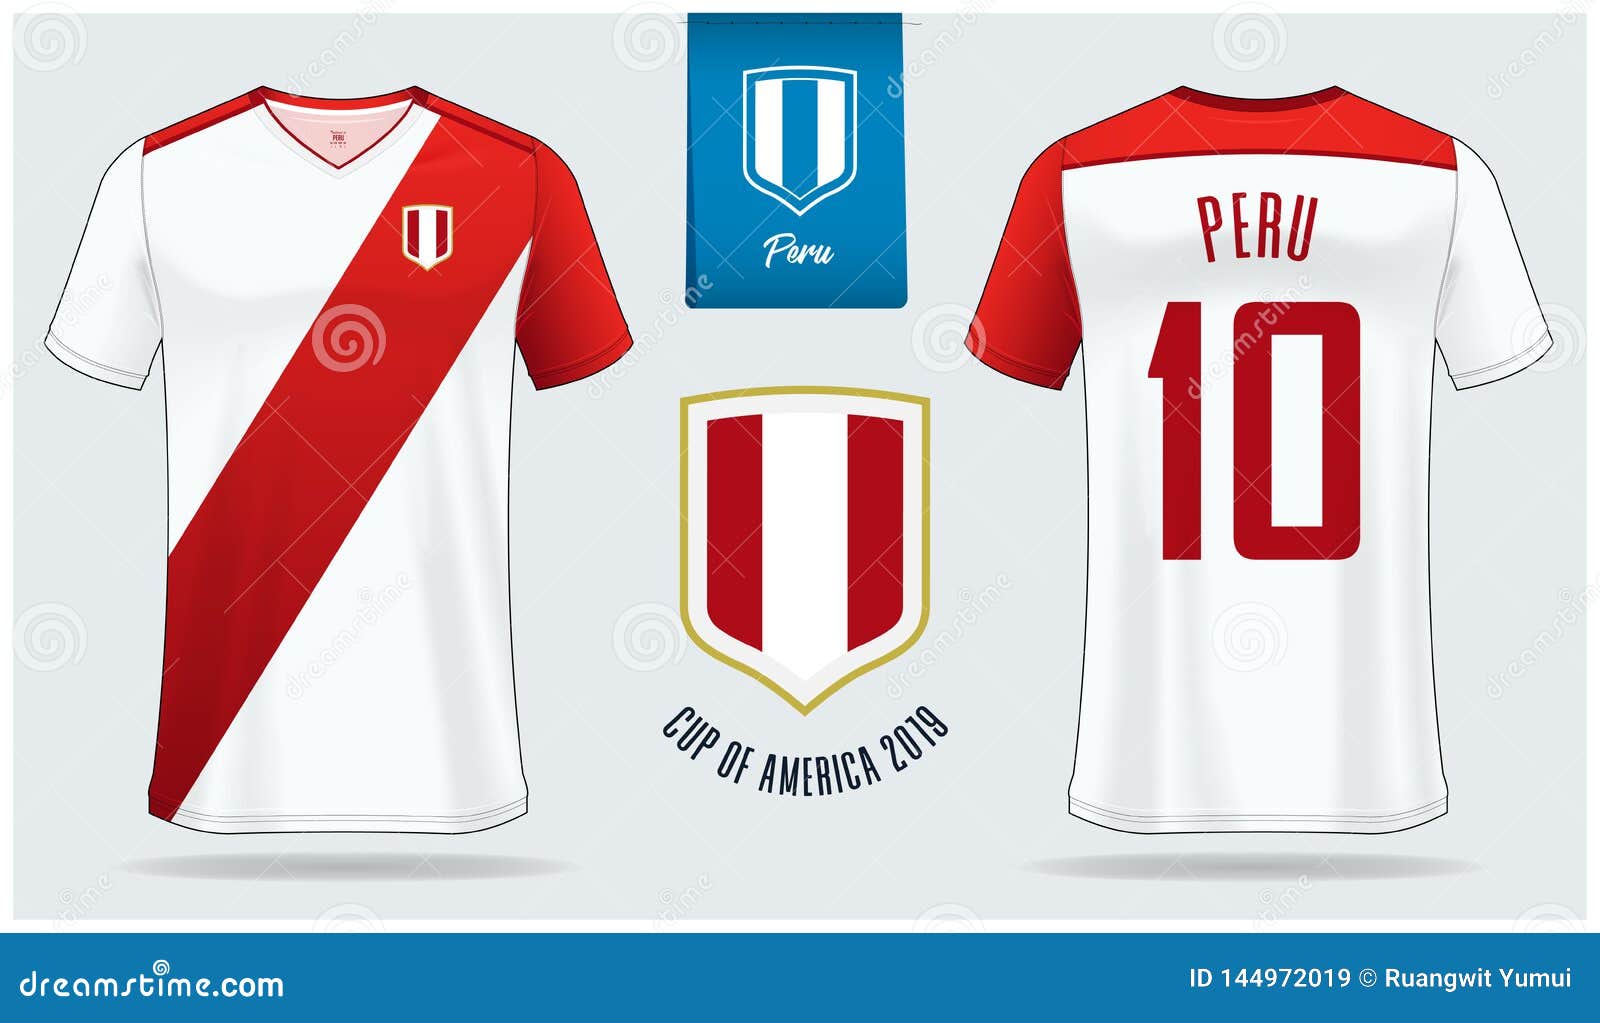 peru national soccer team jersey